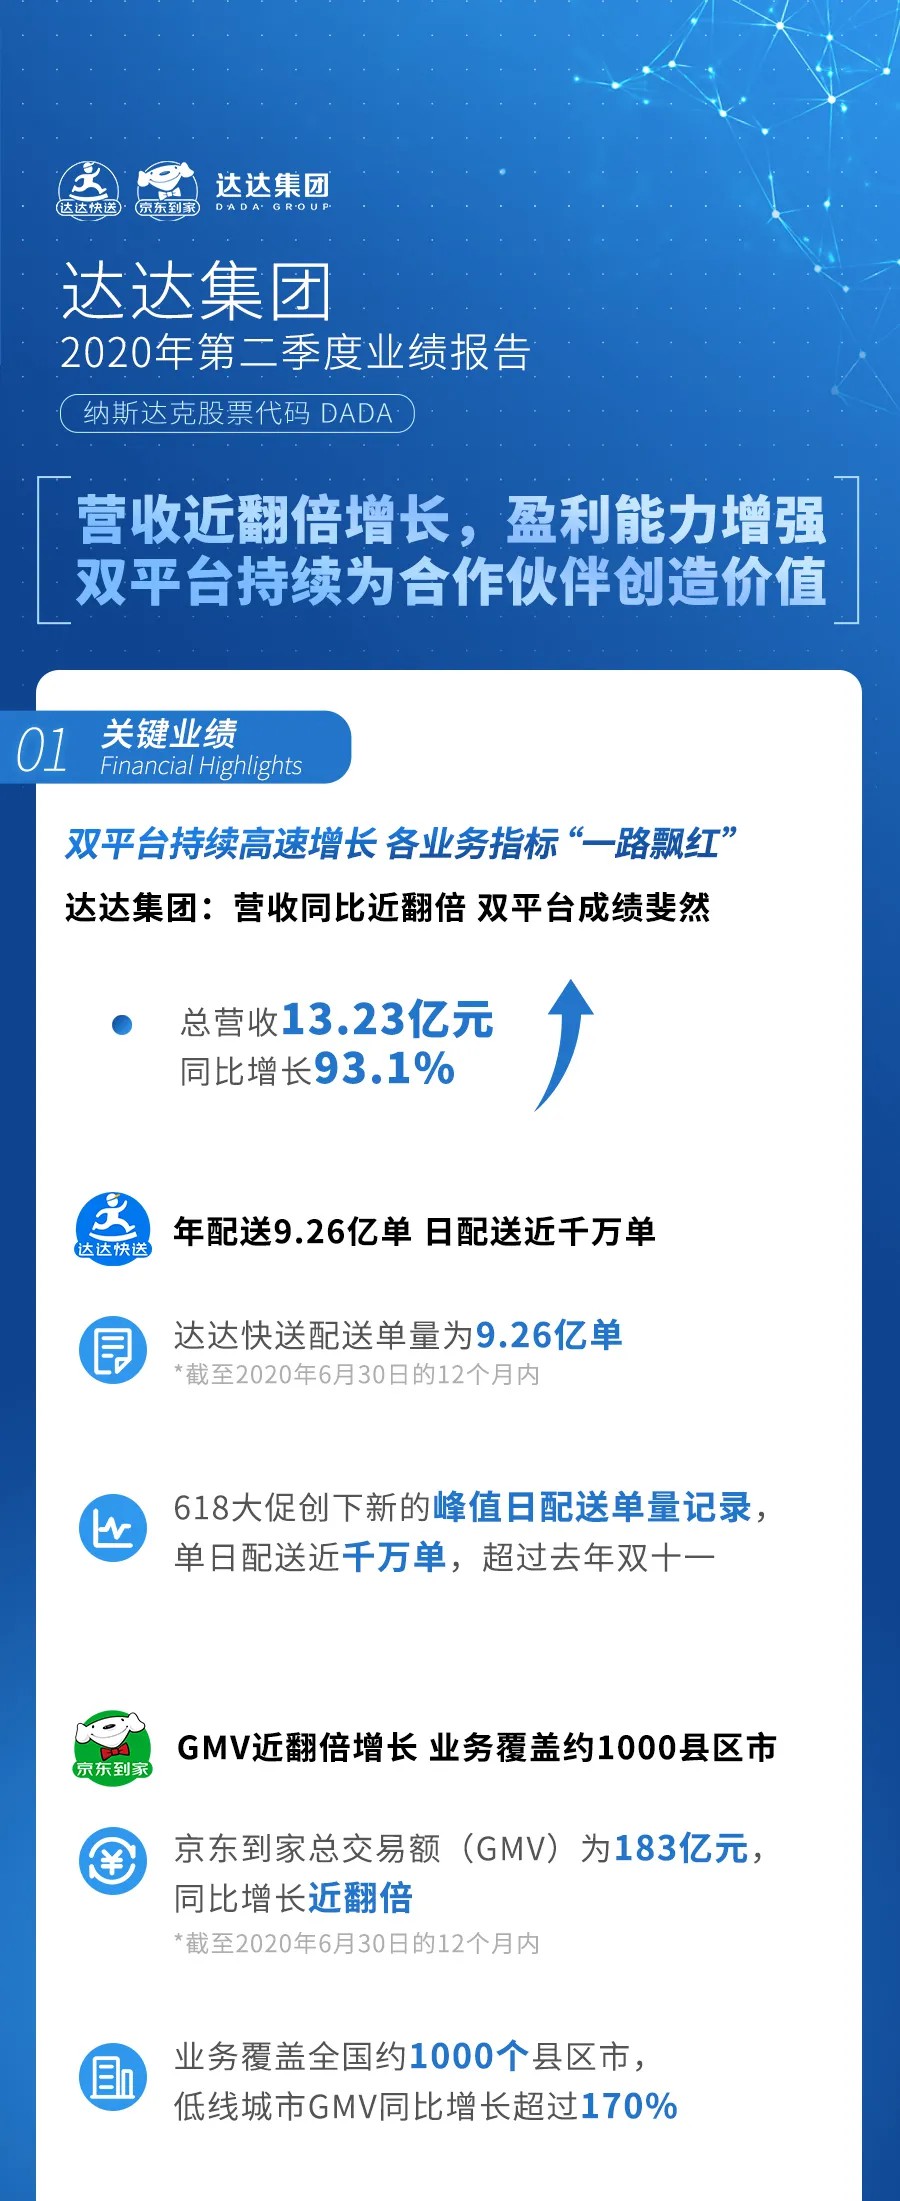 达达集团第二季度营收13.23亿元 同比增长93.1%_物流_电商报